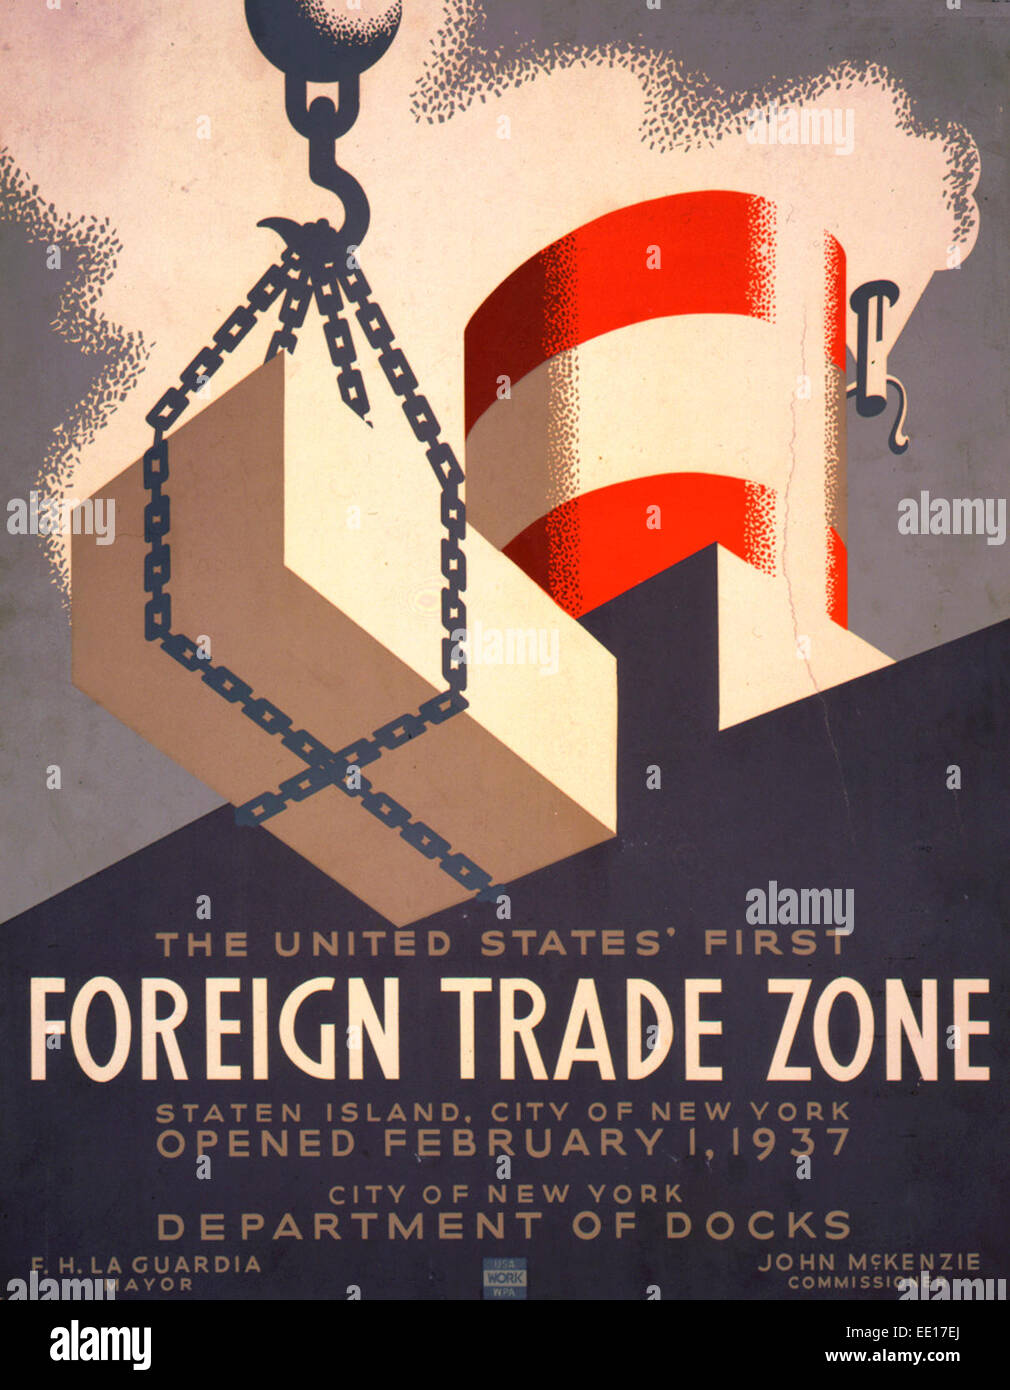 Die Vereinigten Staaten erste Freihandelszone, Staten Island, City of New York, eröffnet 1. Februar 1937 - Plakat für die Stadt von New York Abteilung des Docks, zeigt Schornstein von Schiff und Ladung geladen. Stockfoto